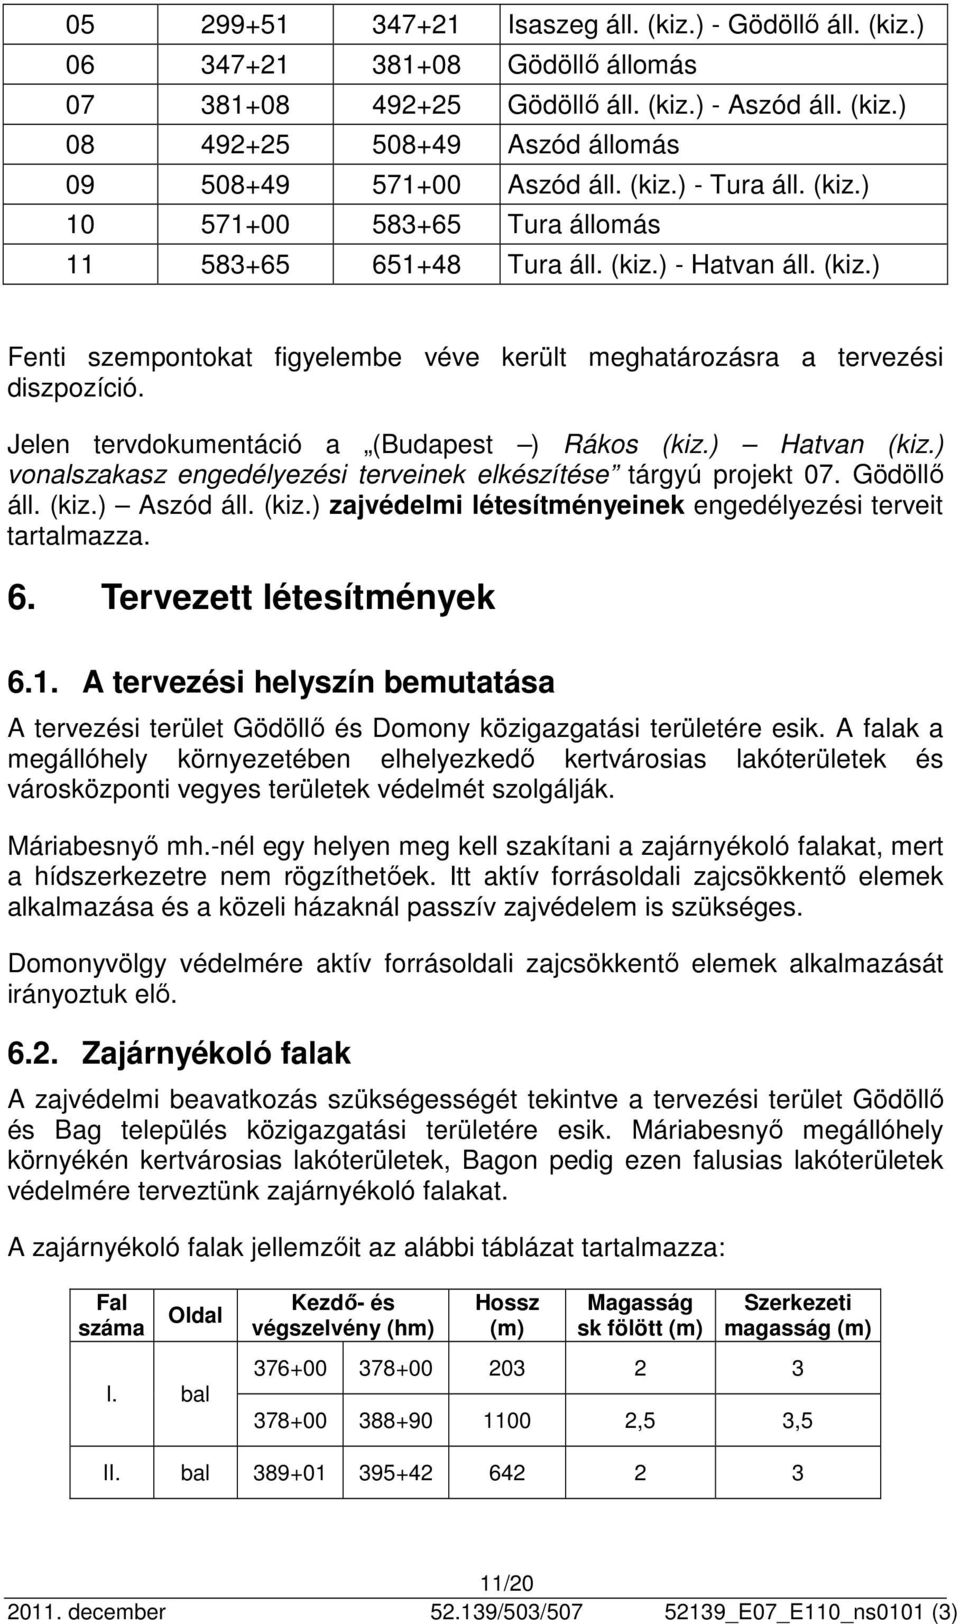 Jelen tervdokumentáció a (Budapest ) Rákos (kiz.) Hatvan (kiz.) vonalszakasz engedélyezési terveinek elkészítése tárgyú projekt 07. Gödöllő áll. (kiz.) Aszód áll. (kiz.) zajvédelmi létesítményeinek engedélyezési terveit tartalmazza.